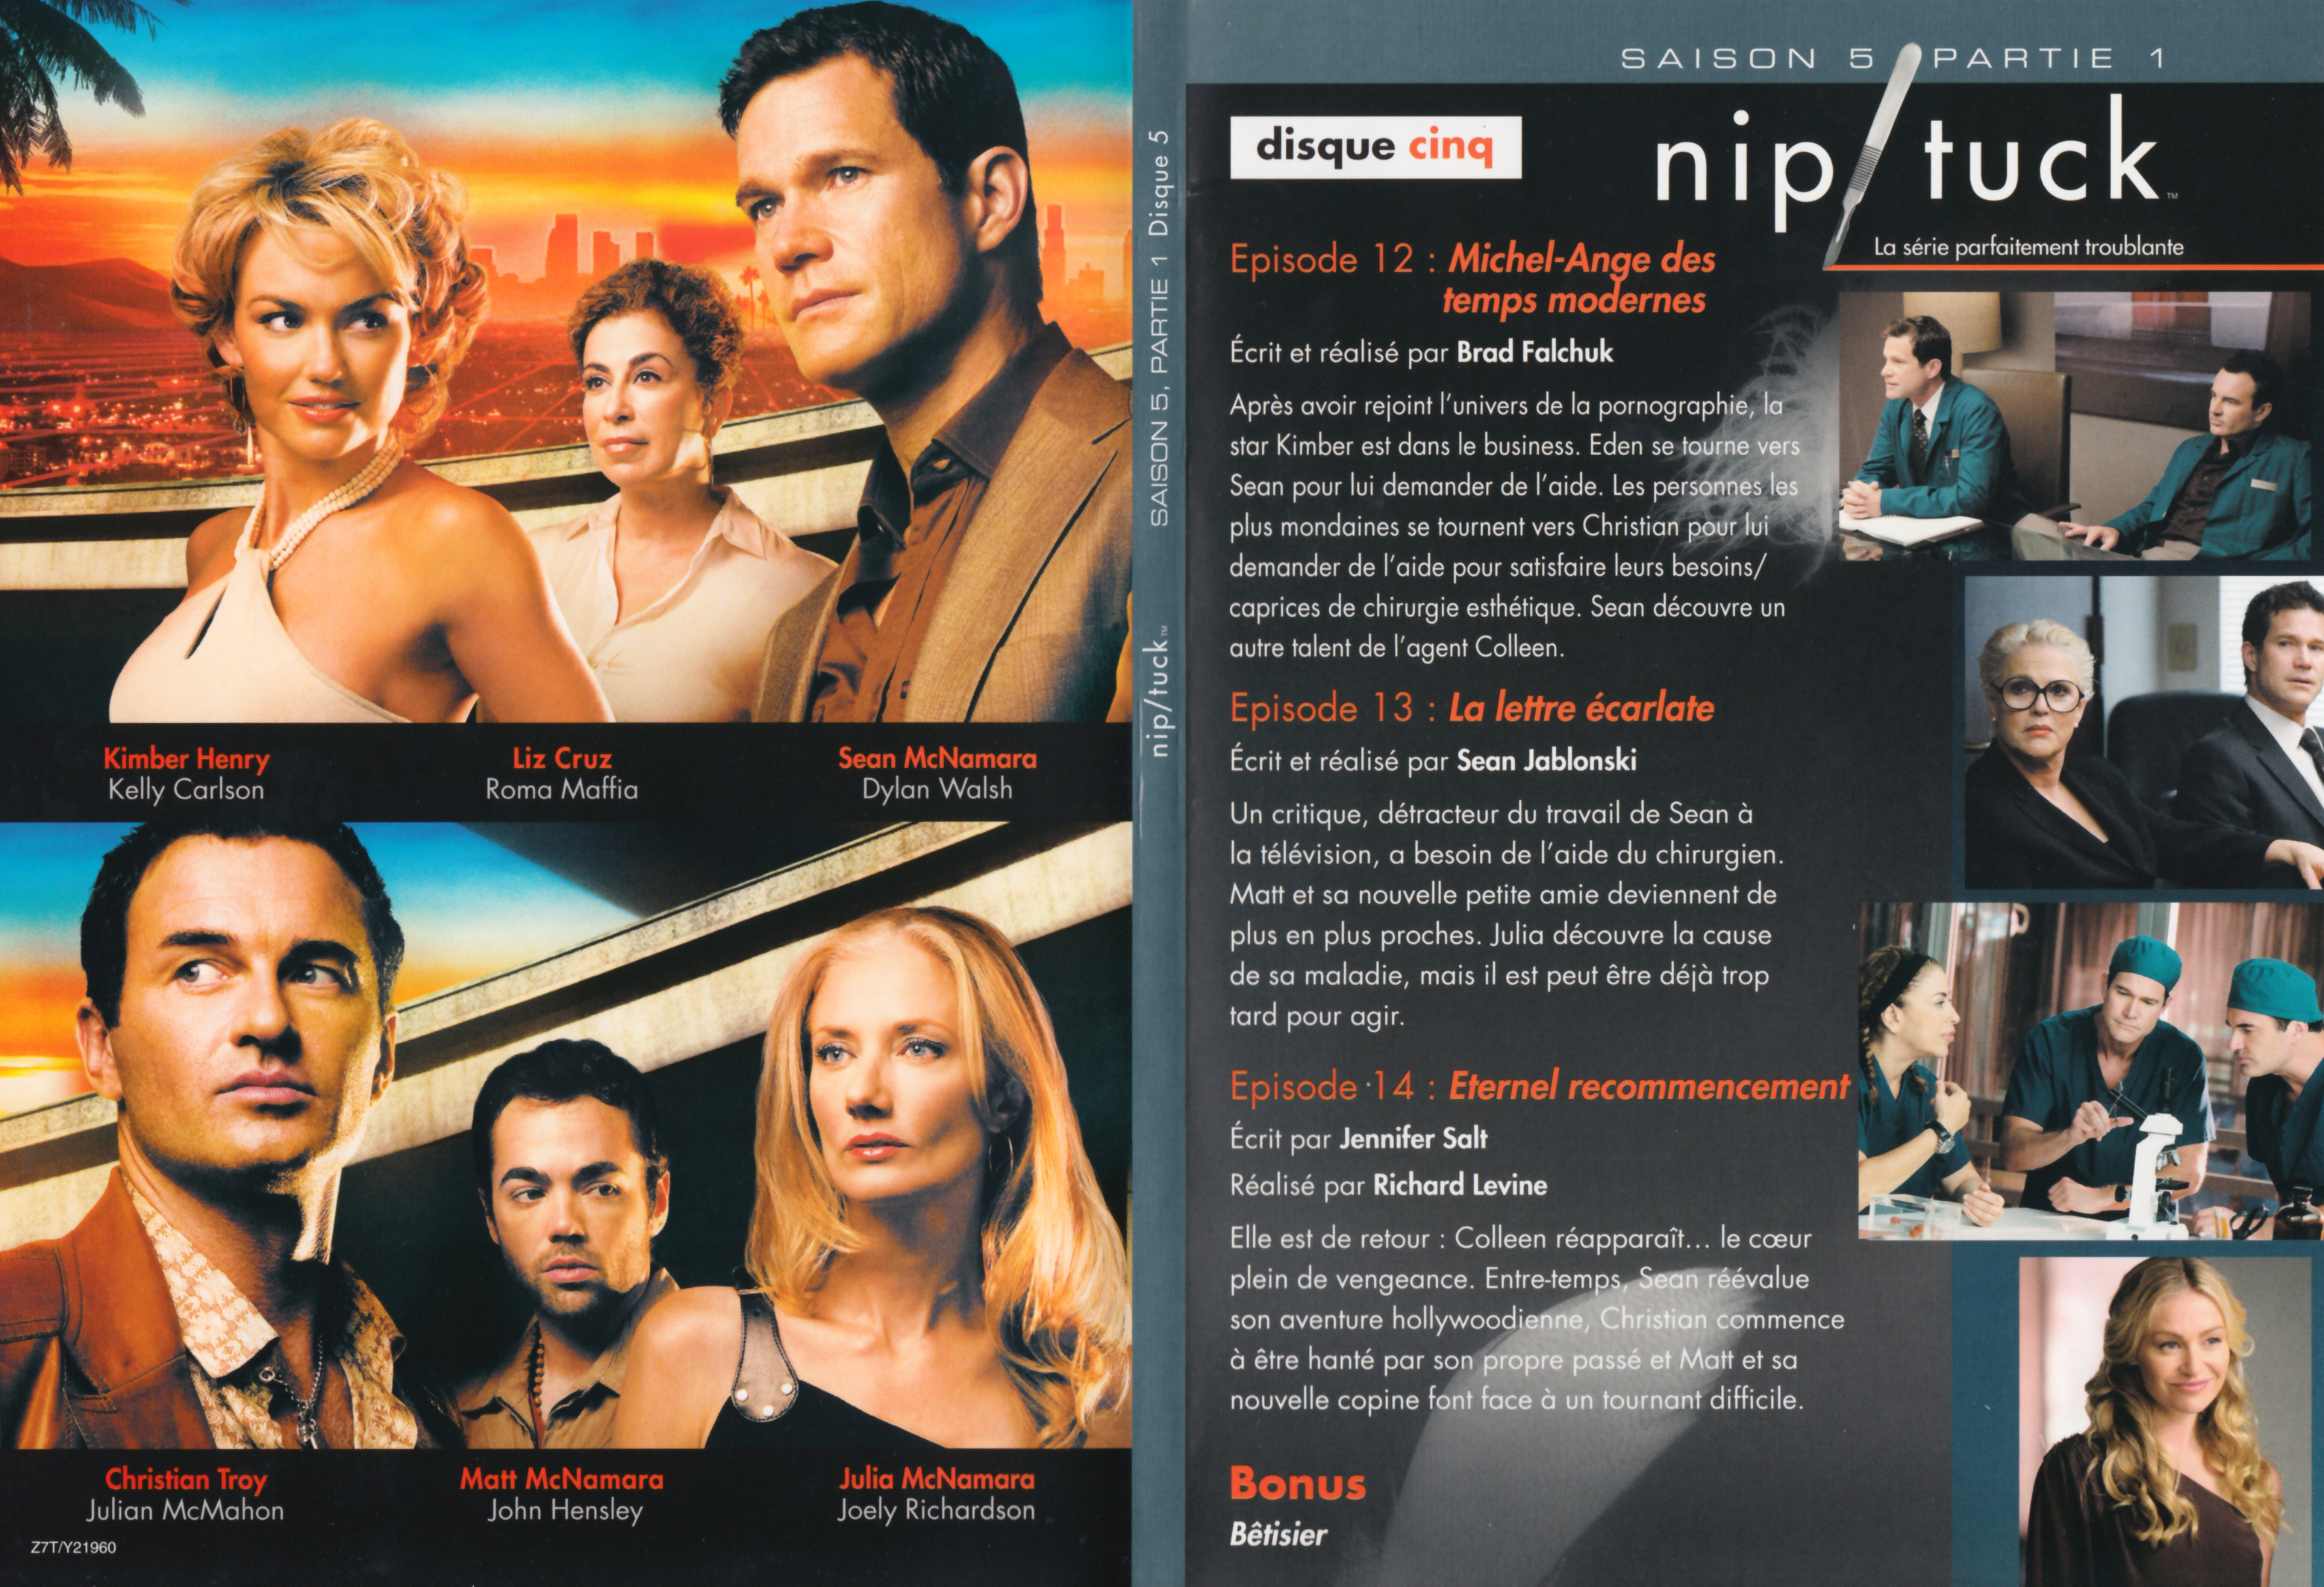 Jaquette DVD Nip-Tuck saison 5 Partie 1 DVD 3